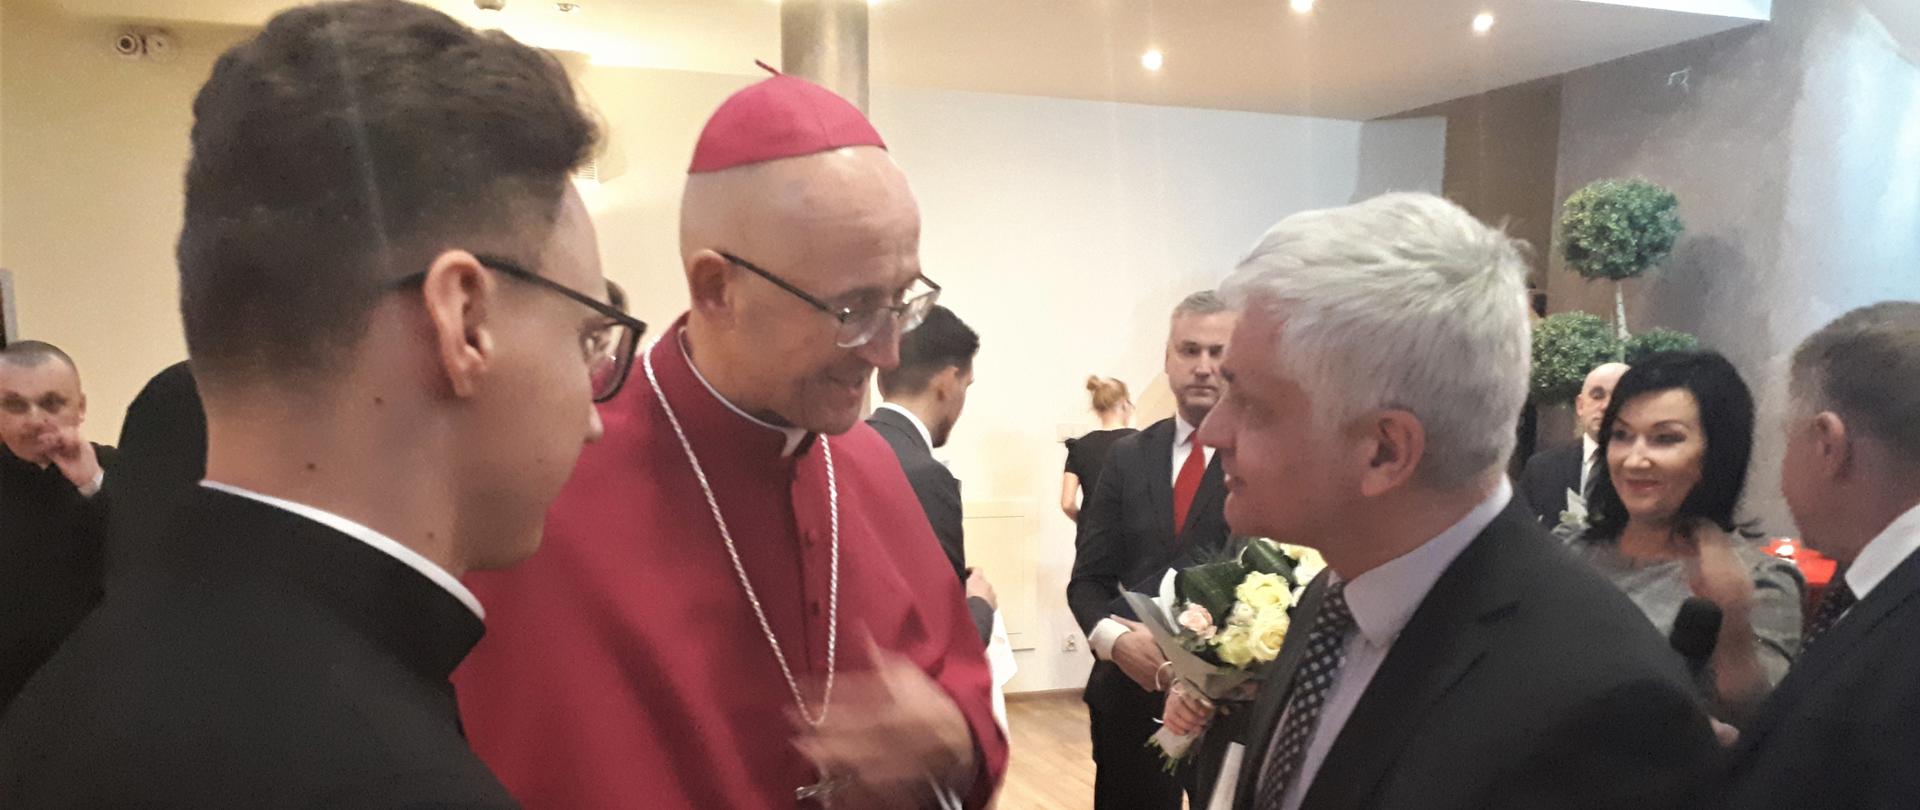 Wojewoda gratuluje biskupowi